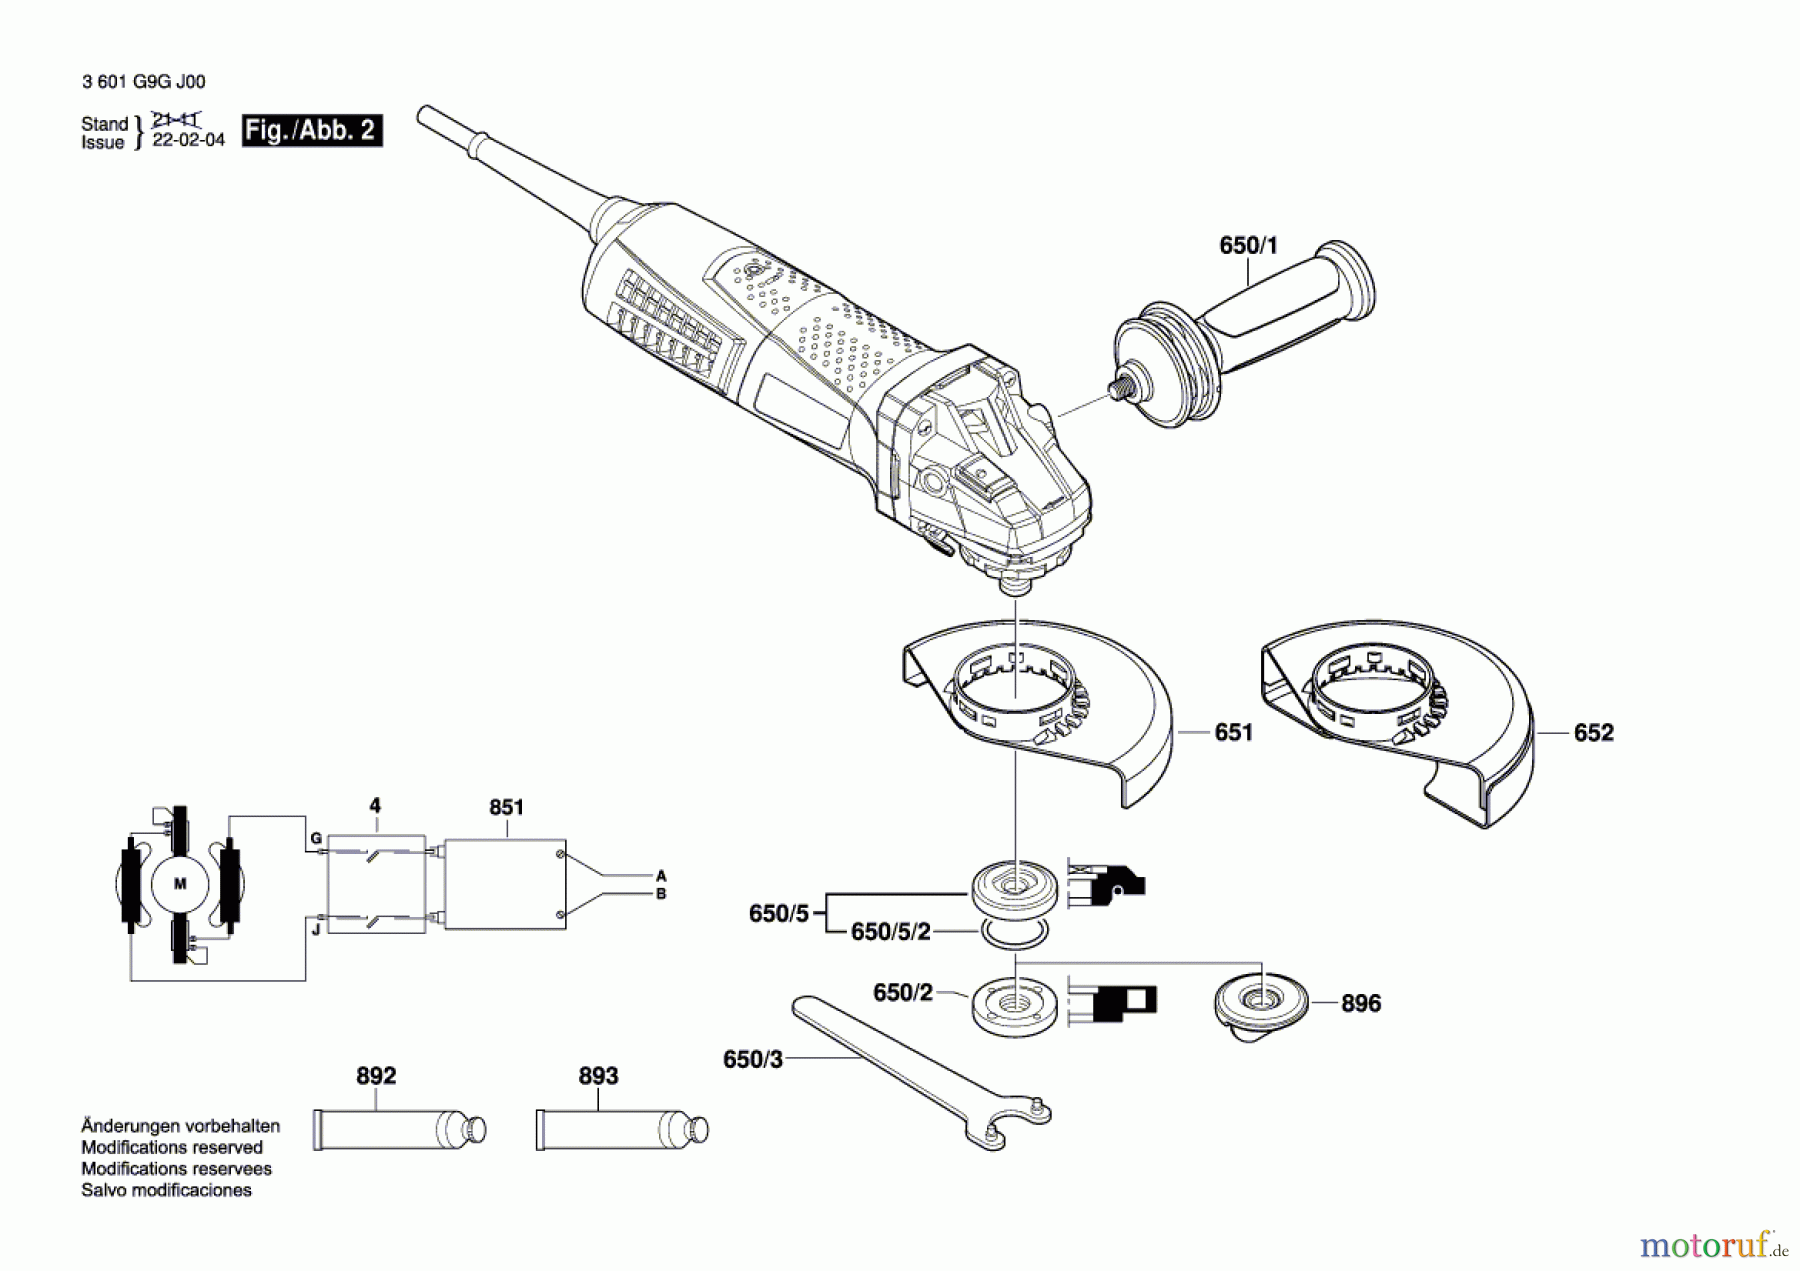  Bosch Werkzeug Winkelschleifer CG 17-125 (Fein) Seite 2